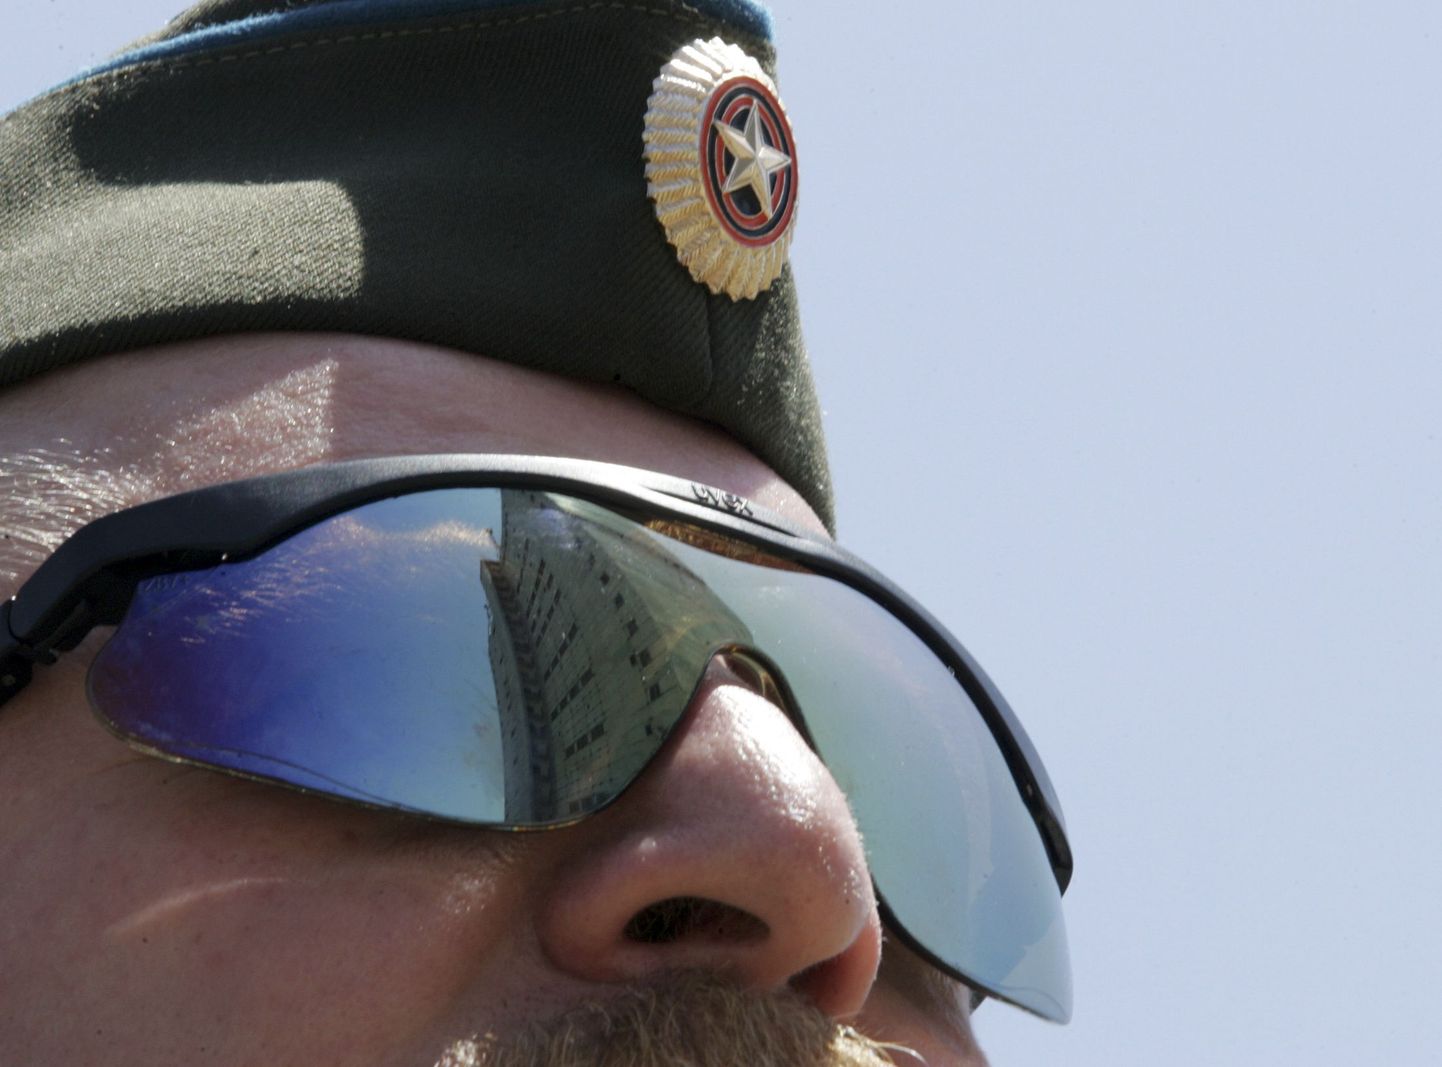 Vene ohvitseri päikeseprillidelt peegeldub Qabala radarijaam Aserbaidžaanis.